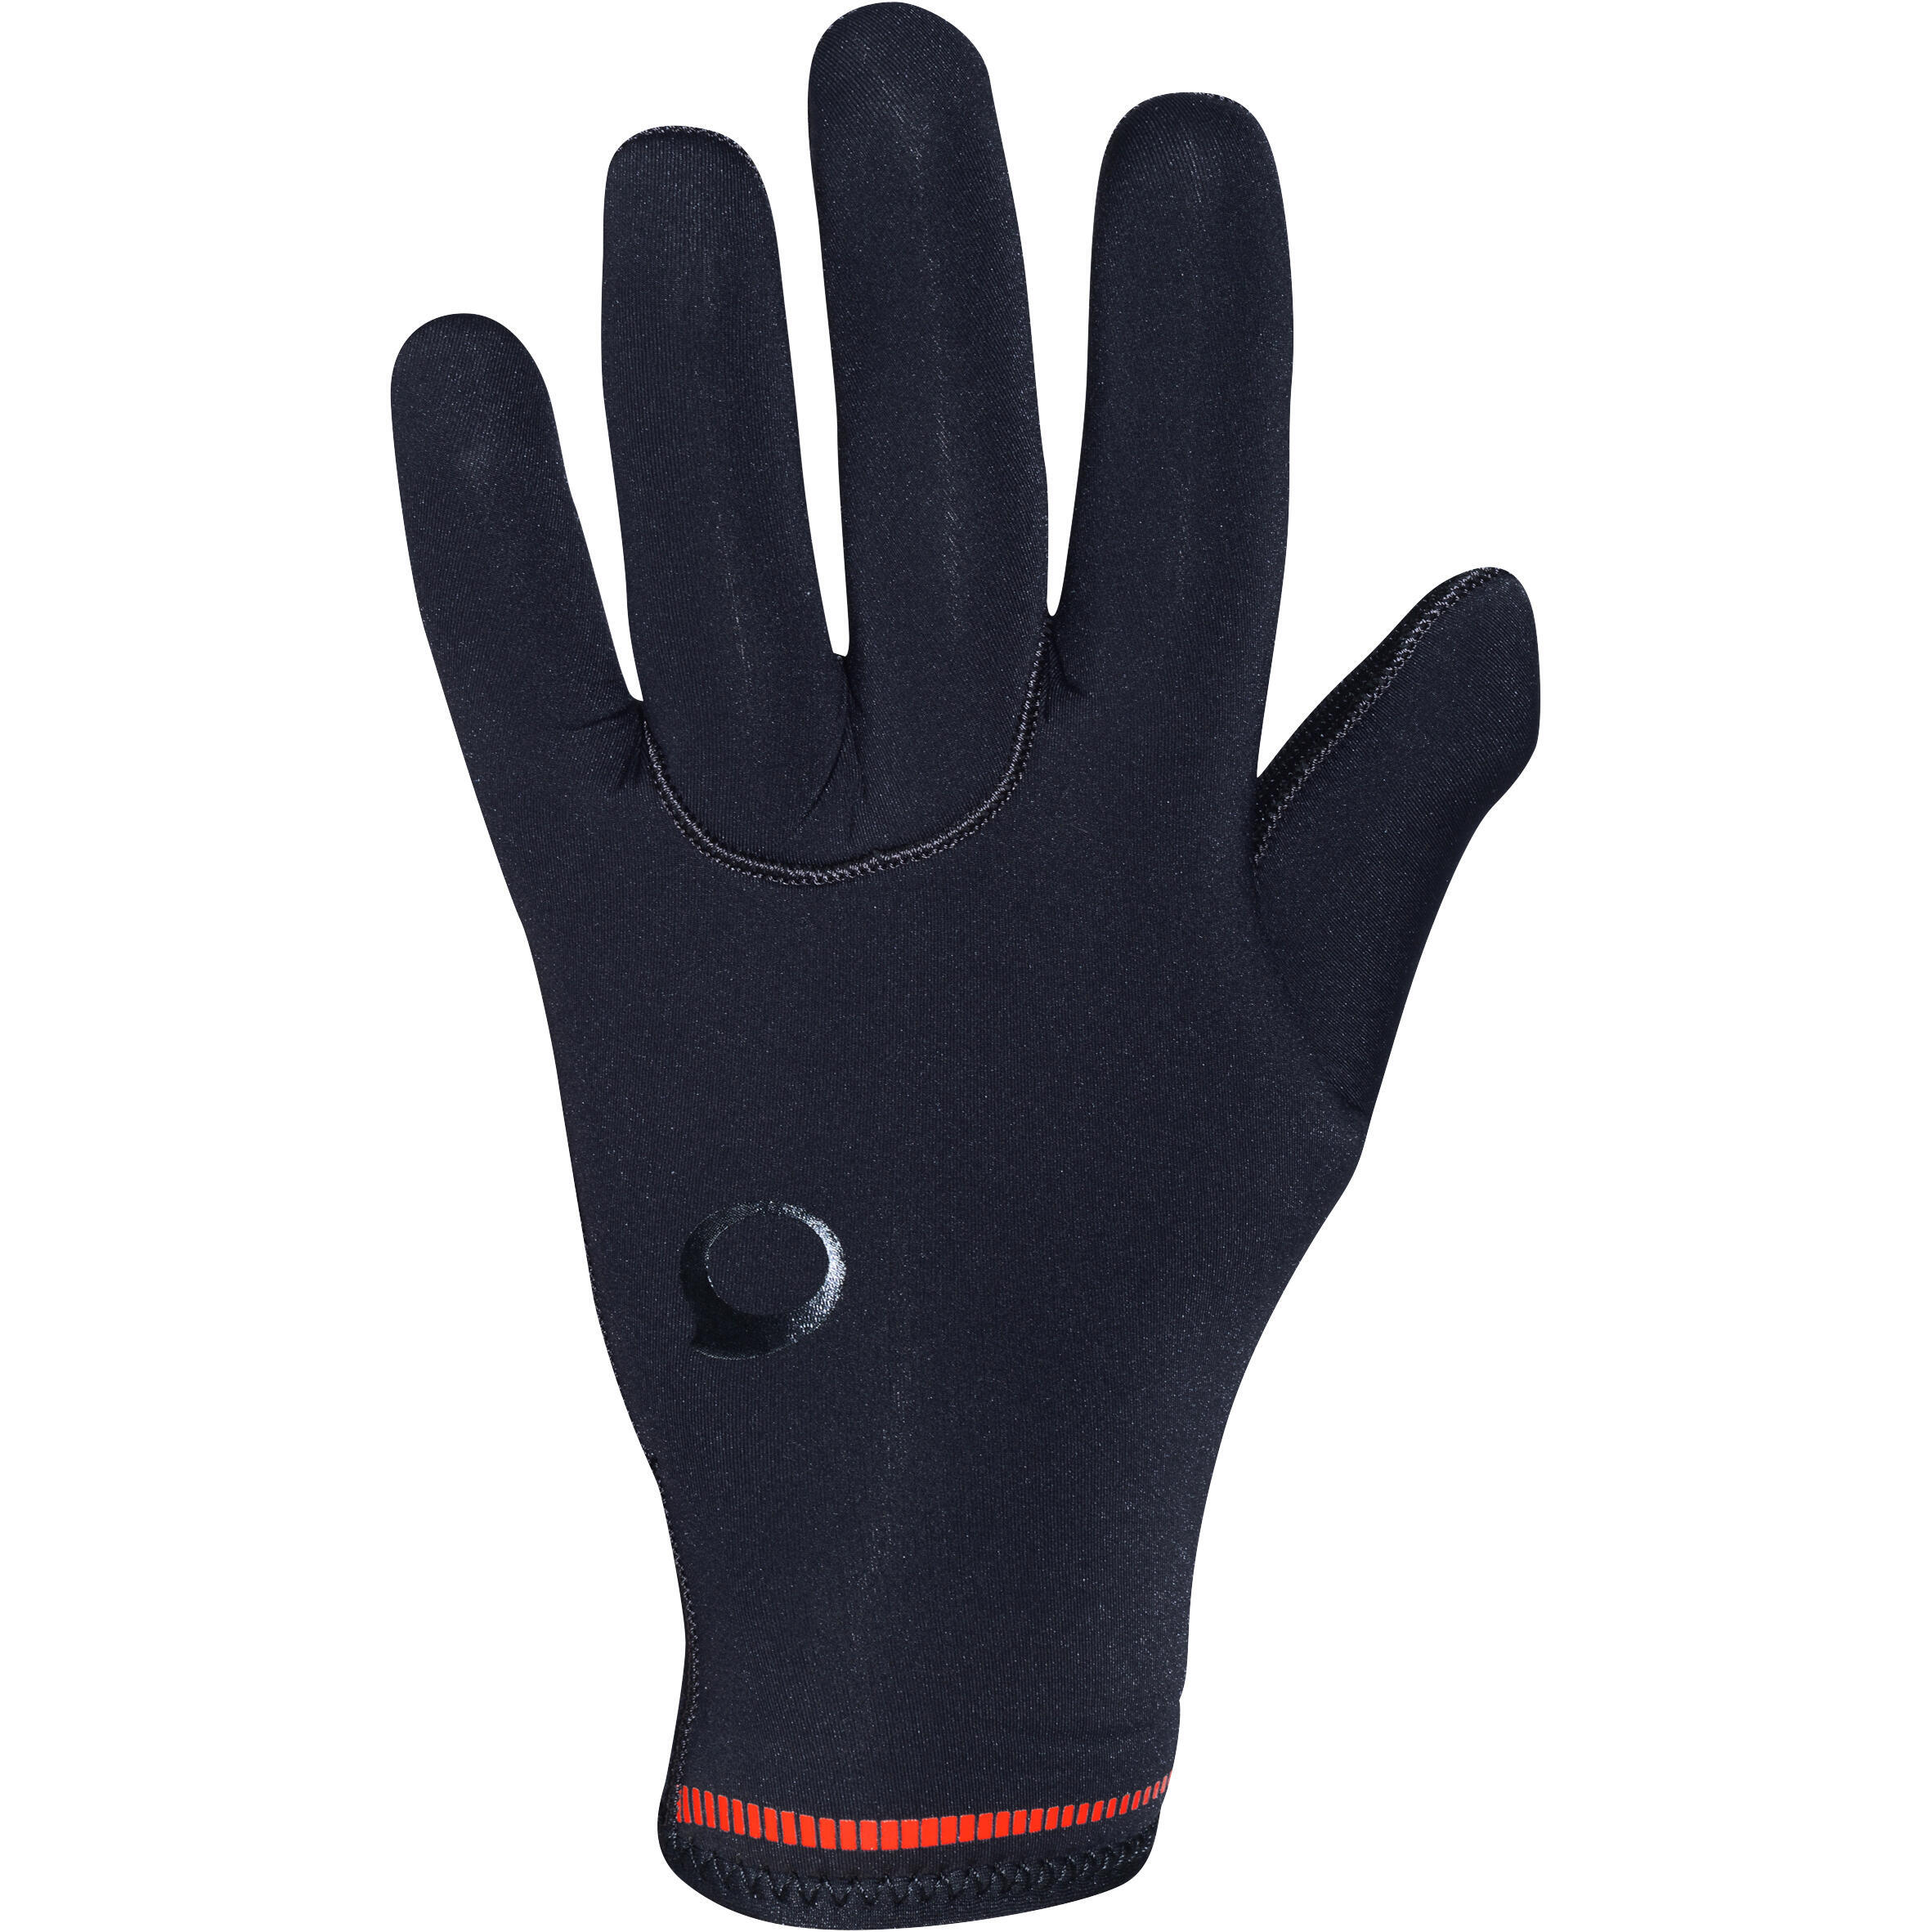 Неопреновые перчатки для дайвинга SCD 5 мм черные SUBEA, черный перчатки для дайвинга 3 мм неопреновые нескользящие перчатки для дайвинга теплые перчатки для плавания перчатки для подводной охоты серф